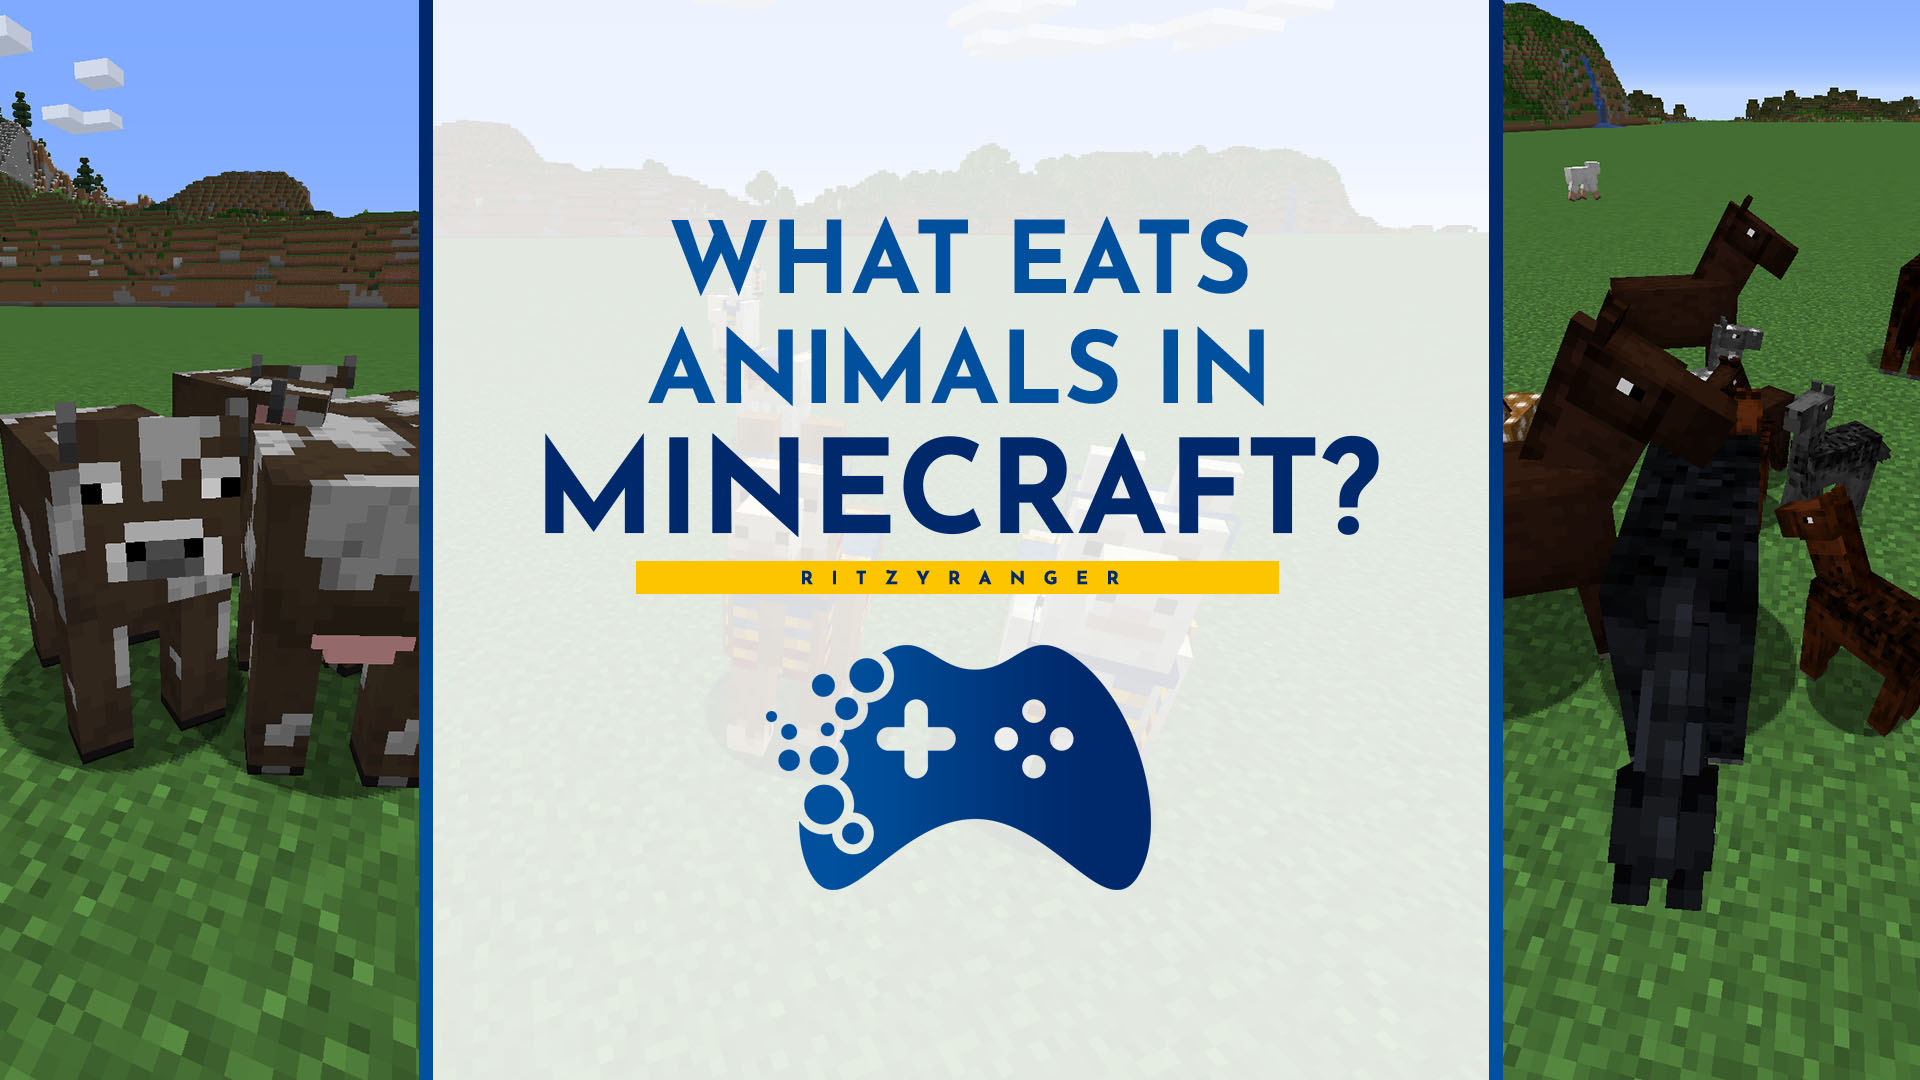 What do animals eat in Minecraft?